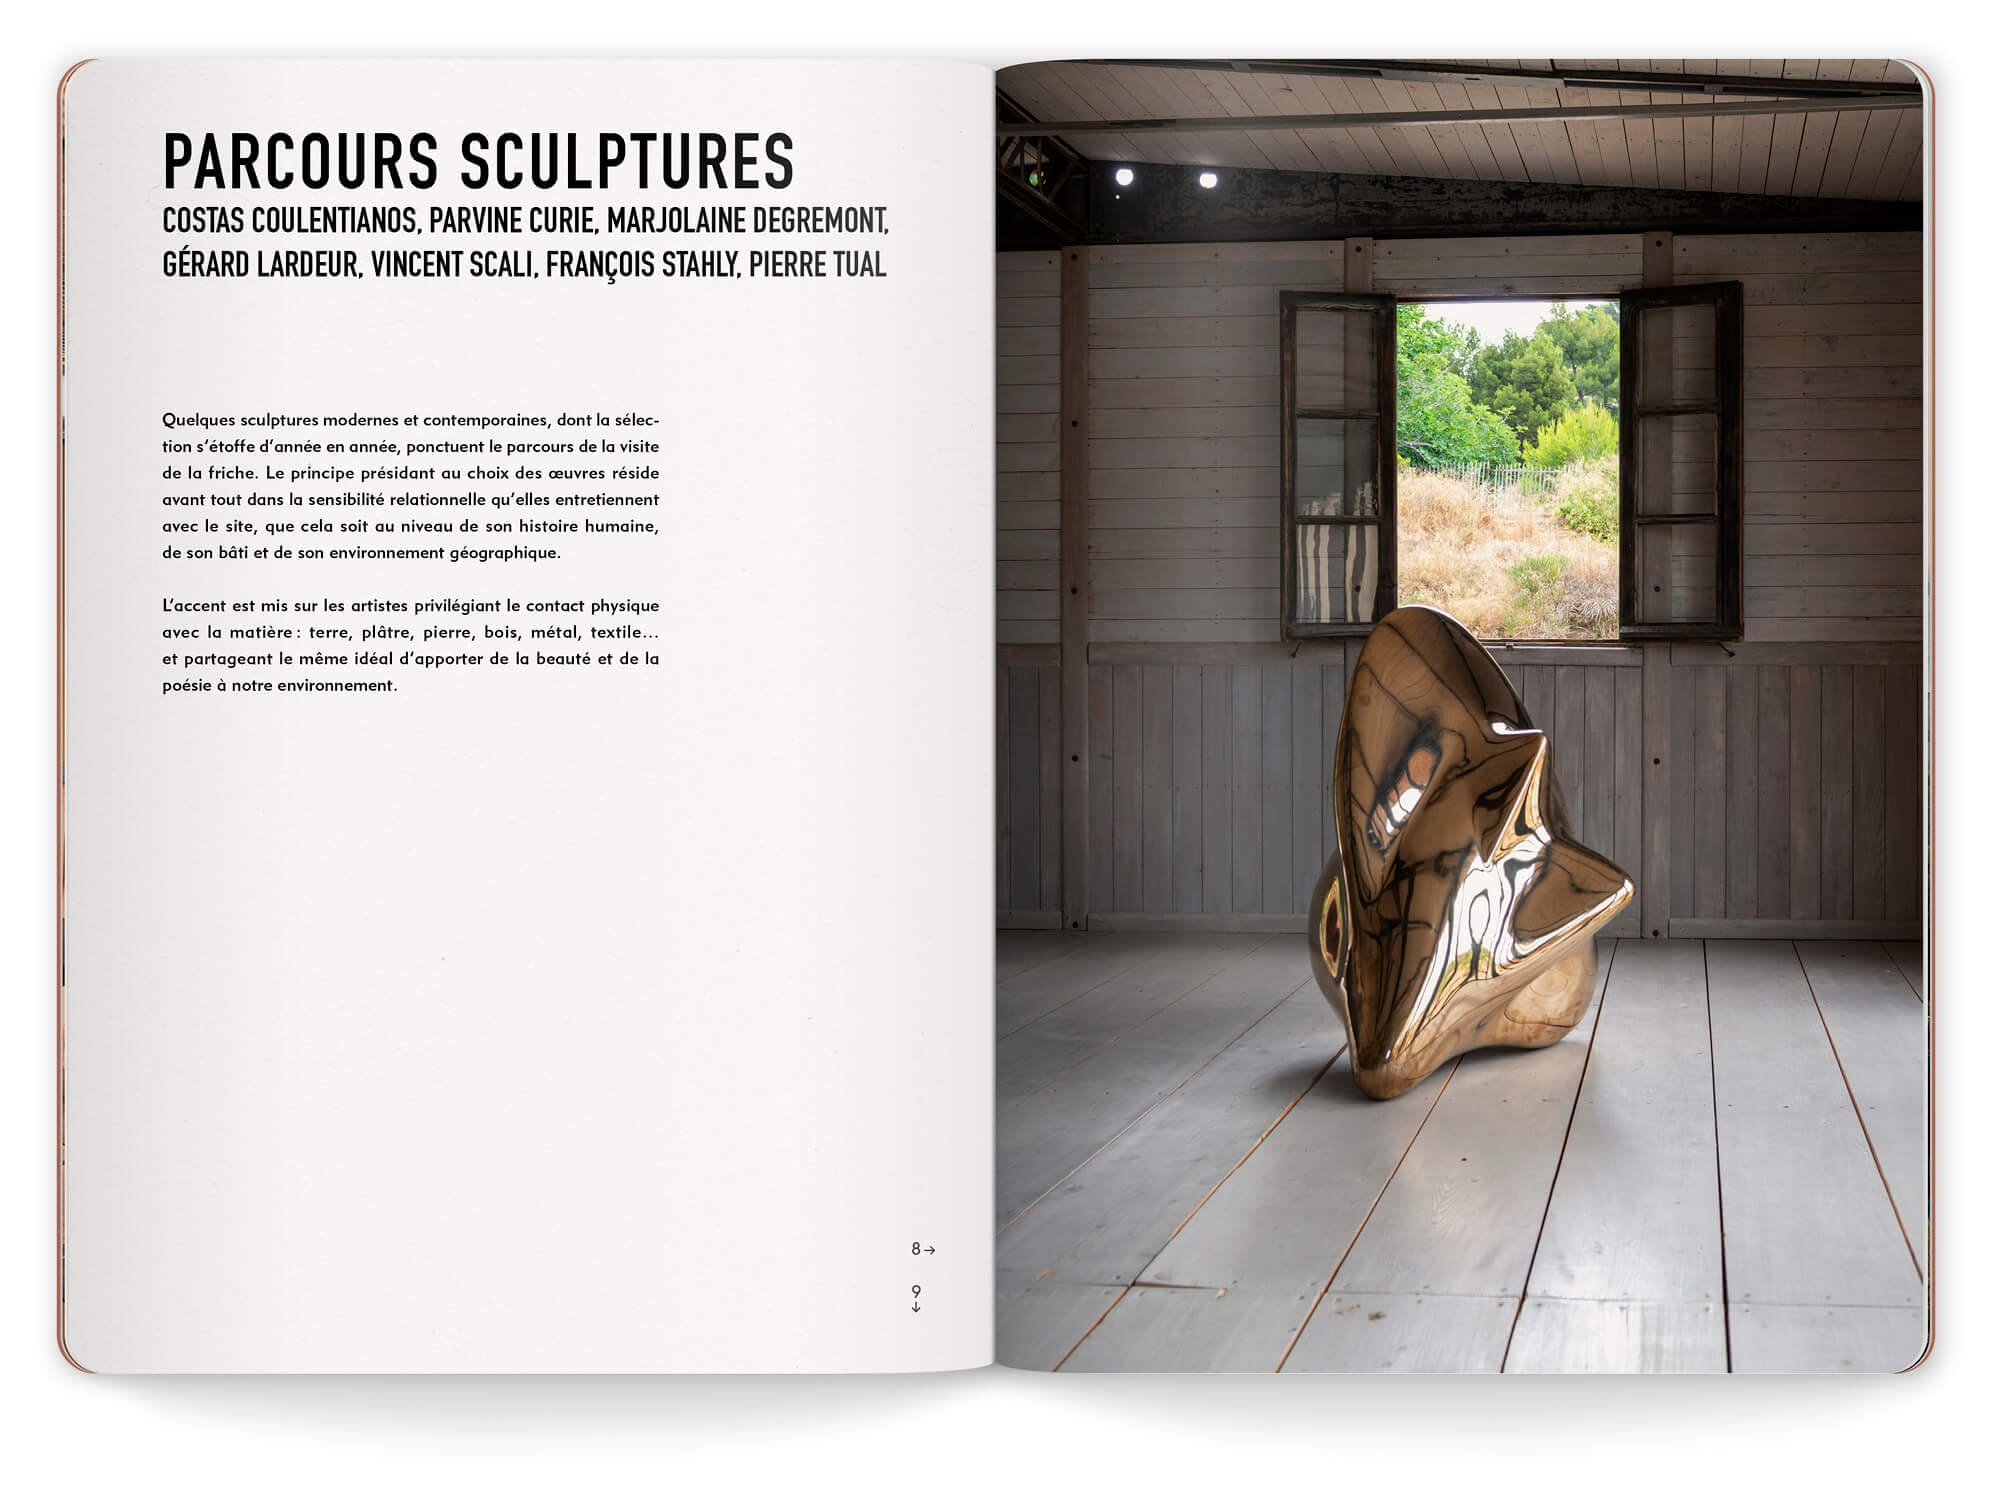 La friche de l'escalette organise un parcours sculpture avec des oeuvres de François Stahly, Pierre Tual, Gérard largeur…